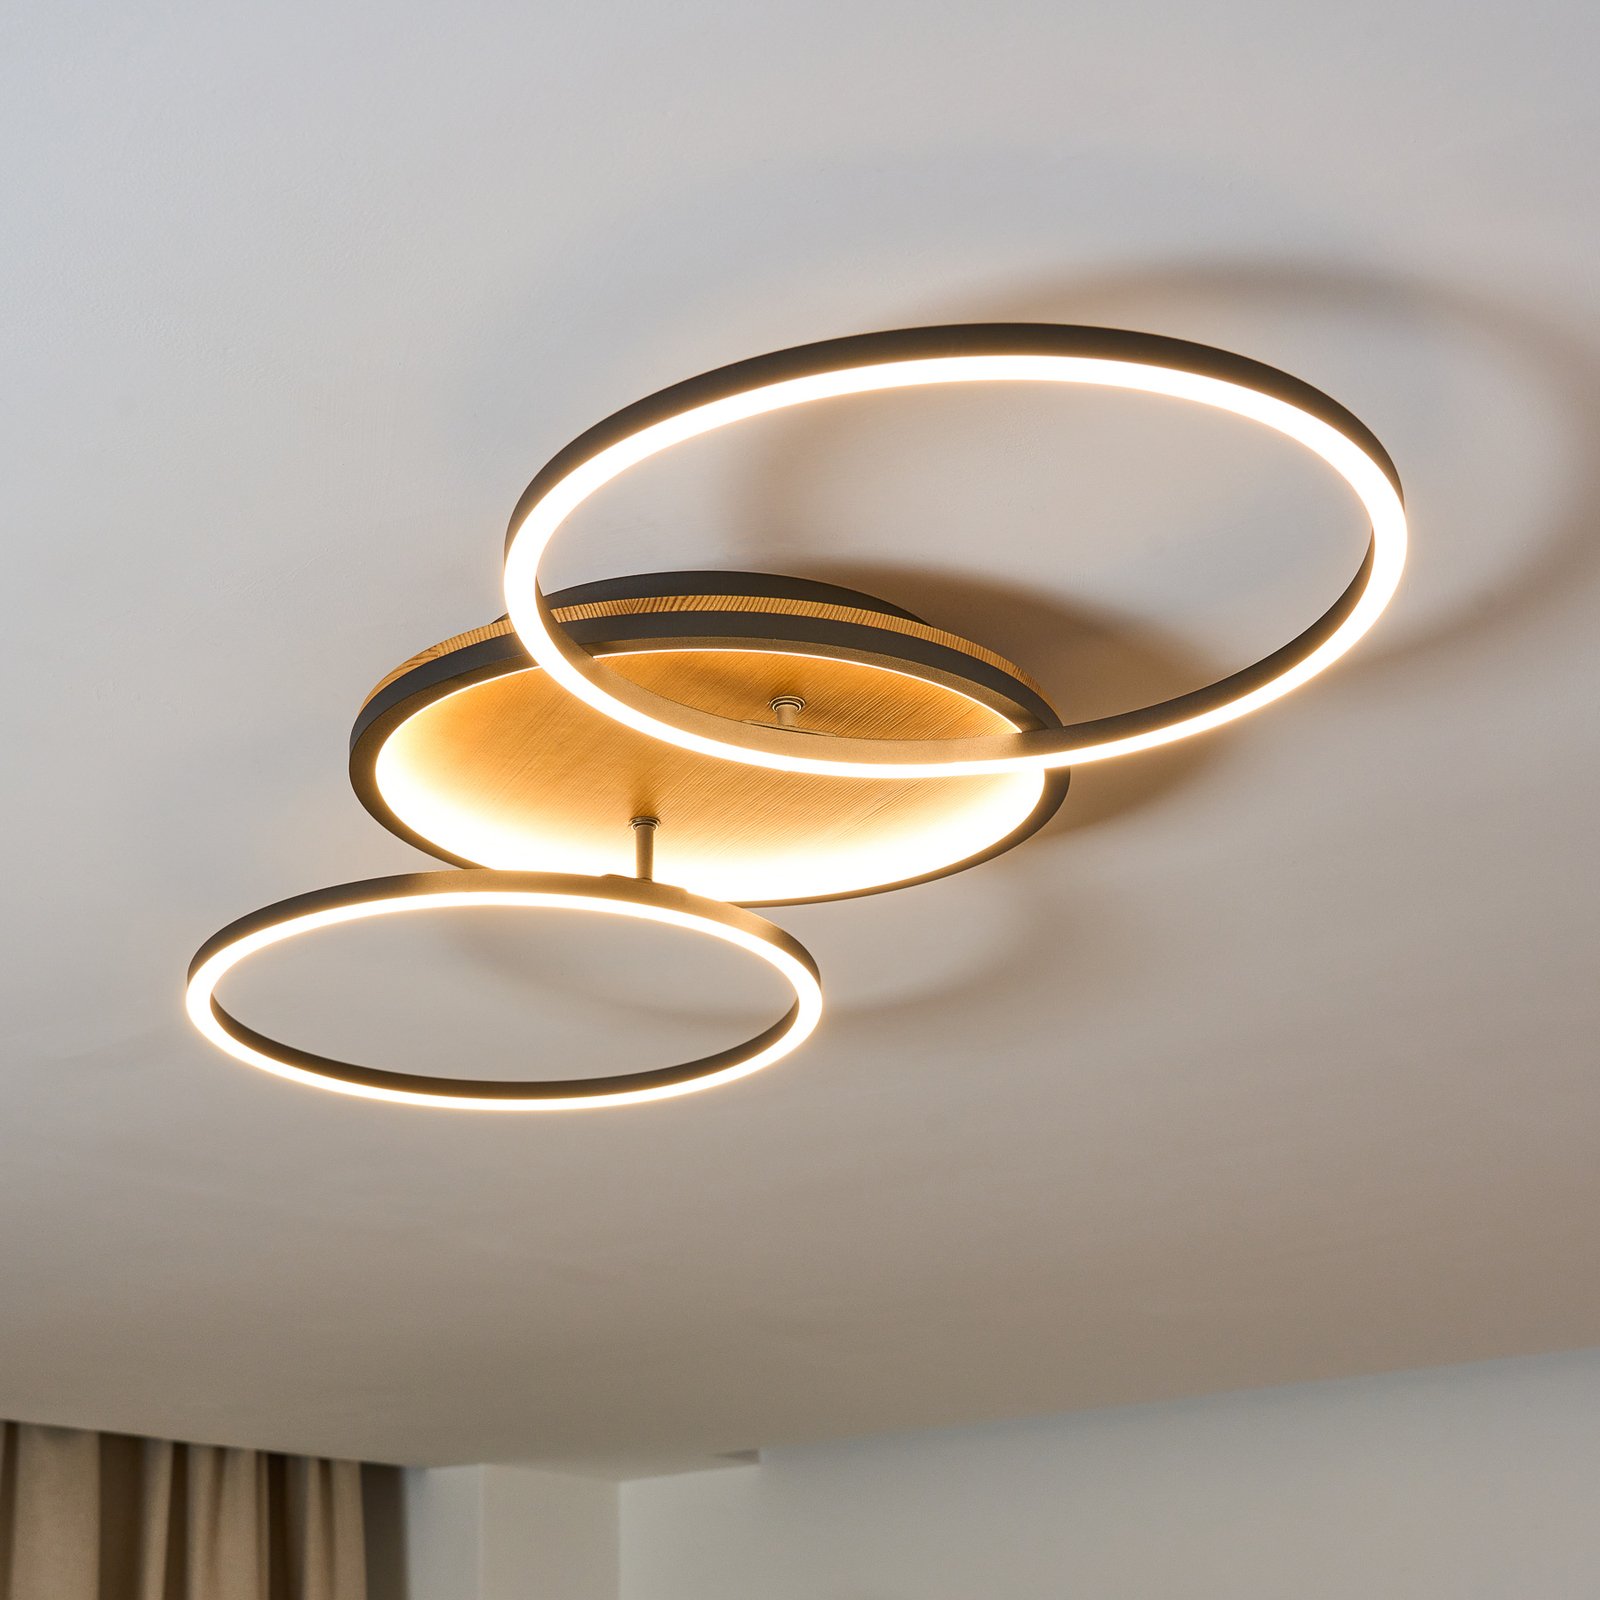 Lampa sufitowa LED Kiru, sosna, długość 87,4 cm, 2-punktowa, drewno